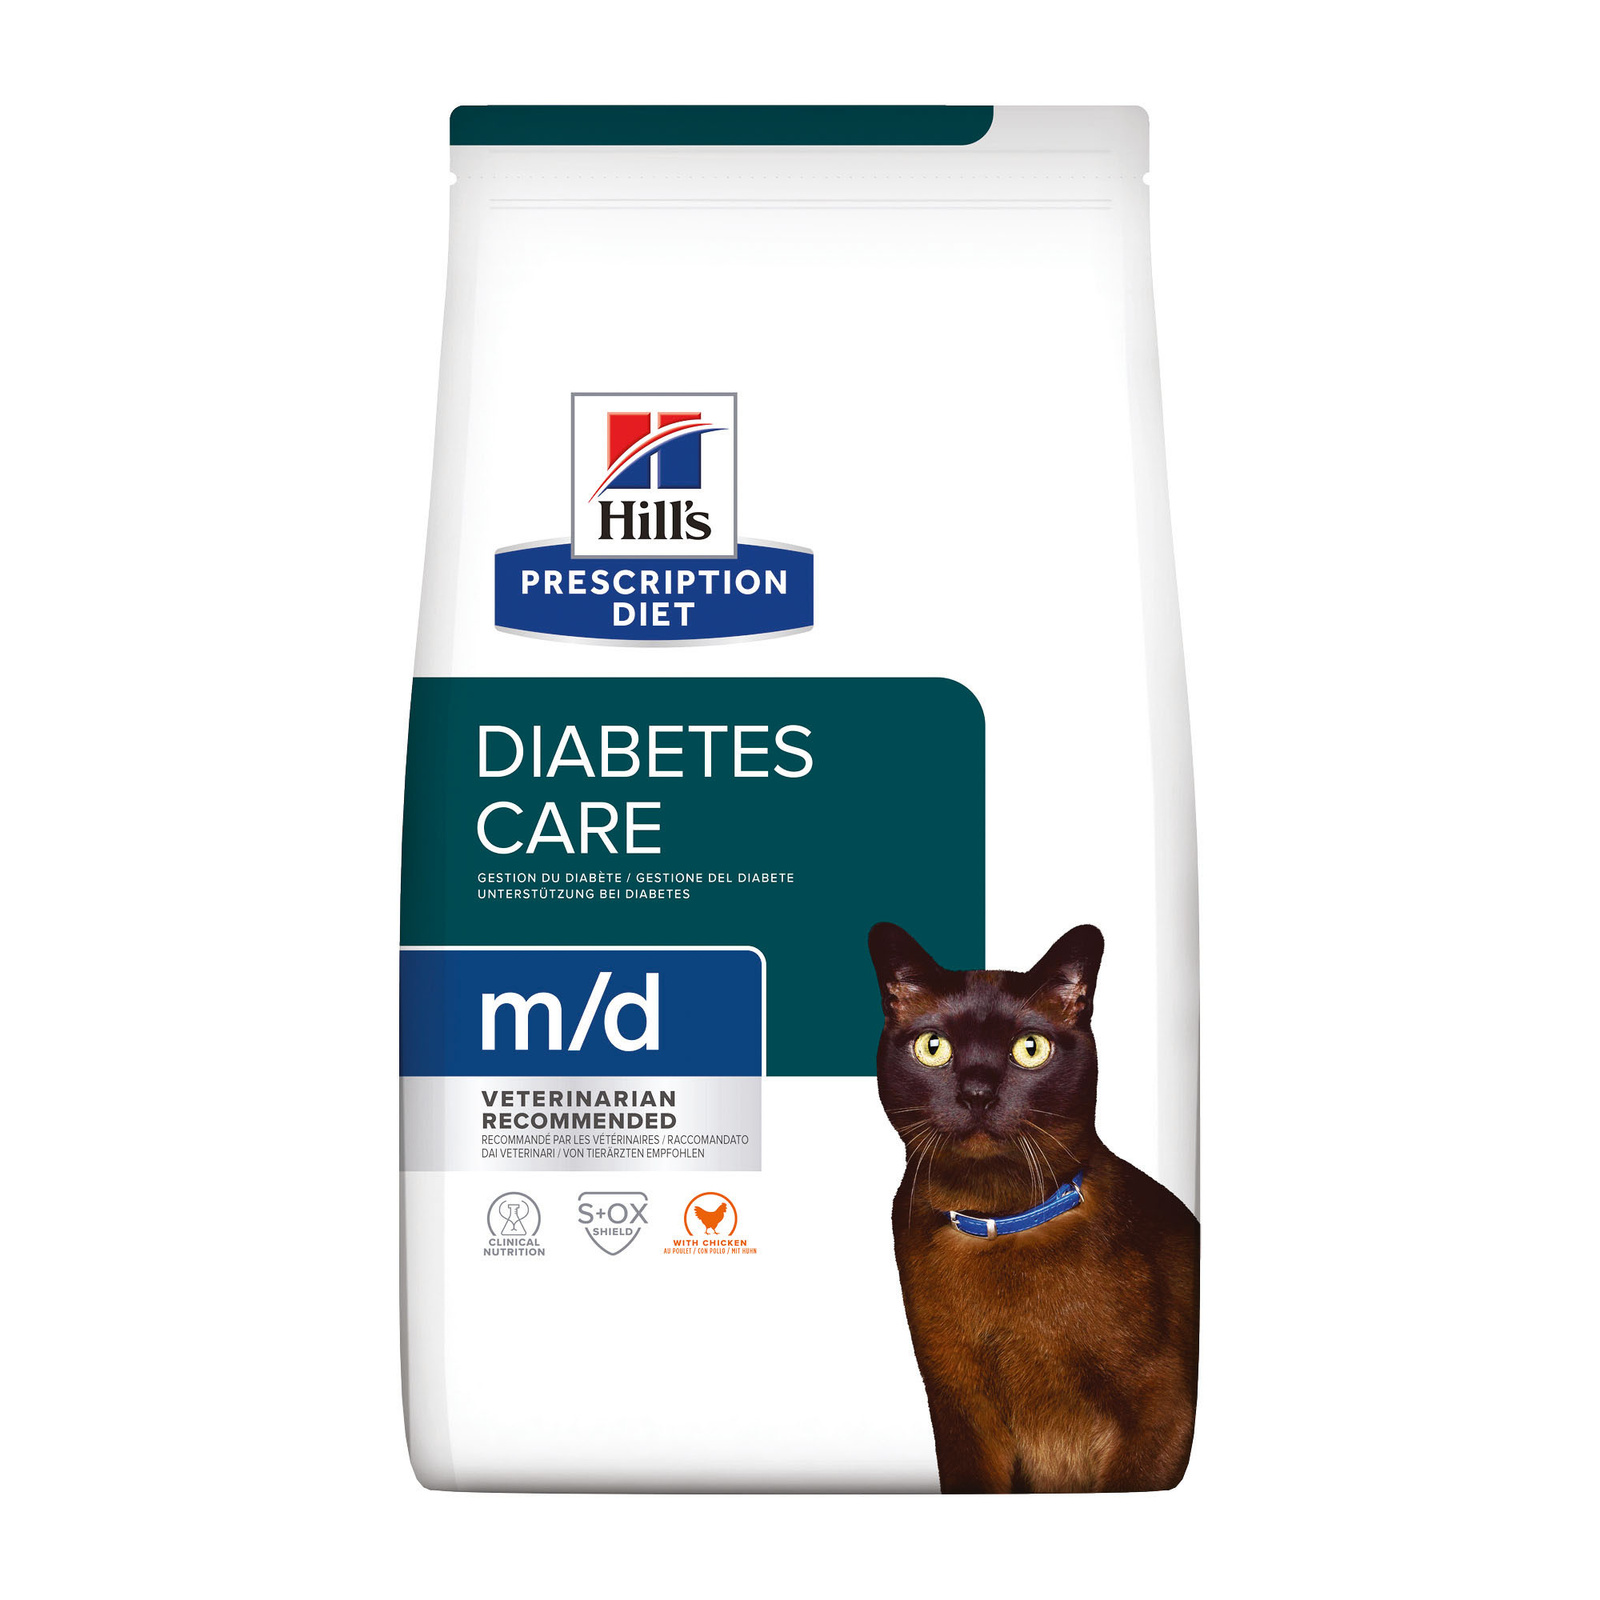 Hill's Prescription Diet Hill's Prescription Diet сухой диетический корм для кошек m/d при сахарном диабете, с курицей (1,5 кг) 22612